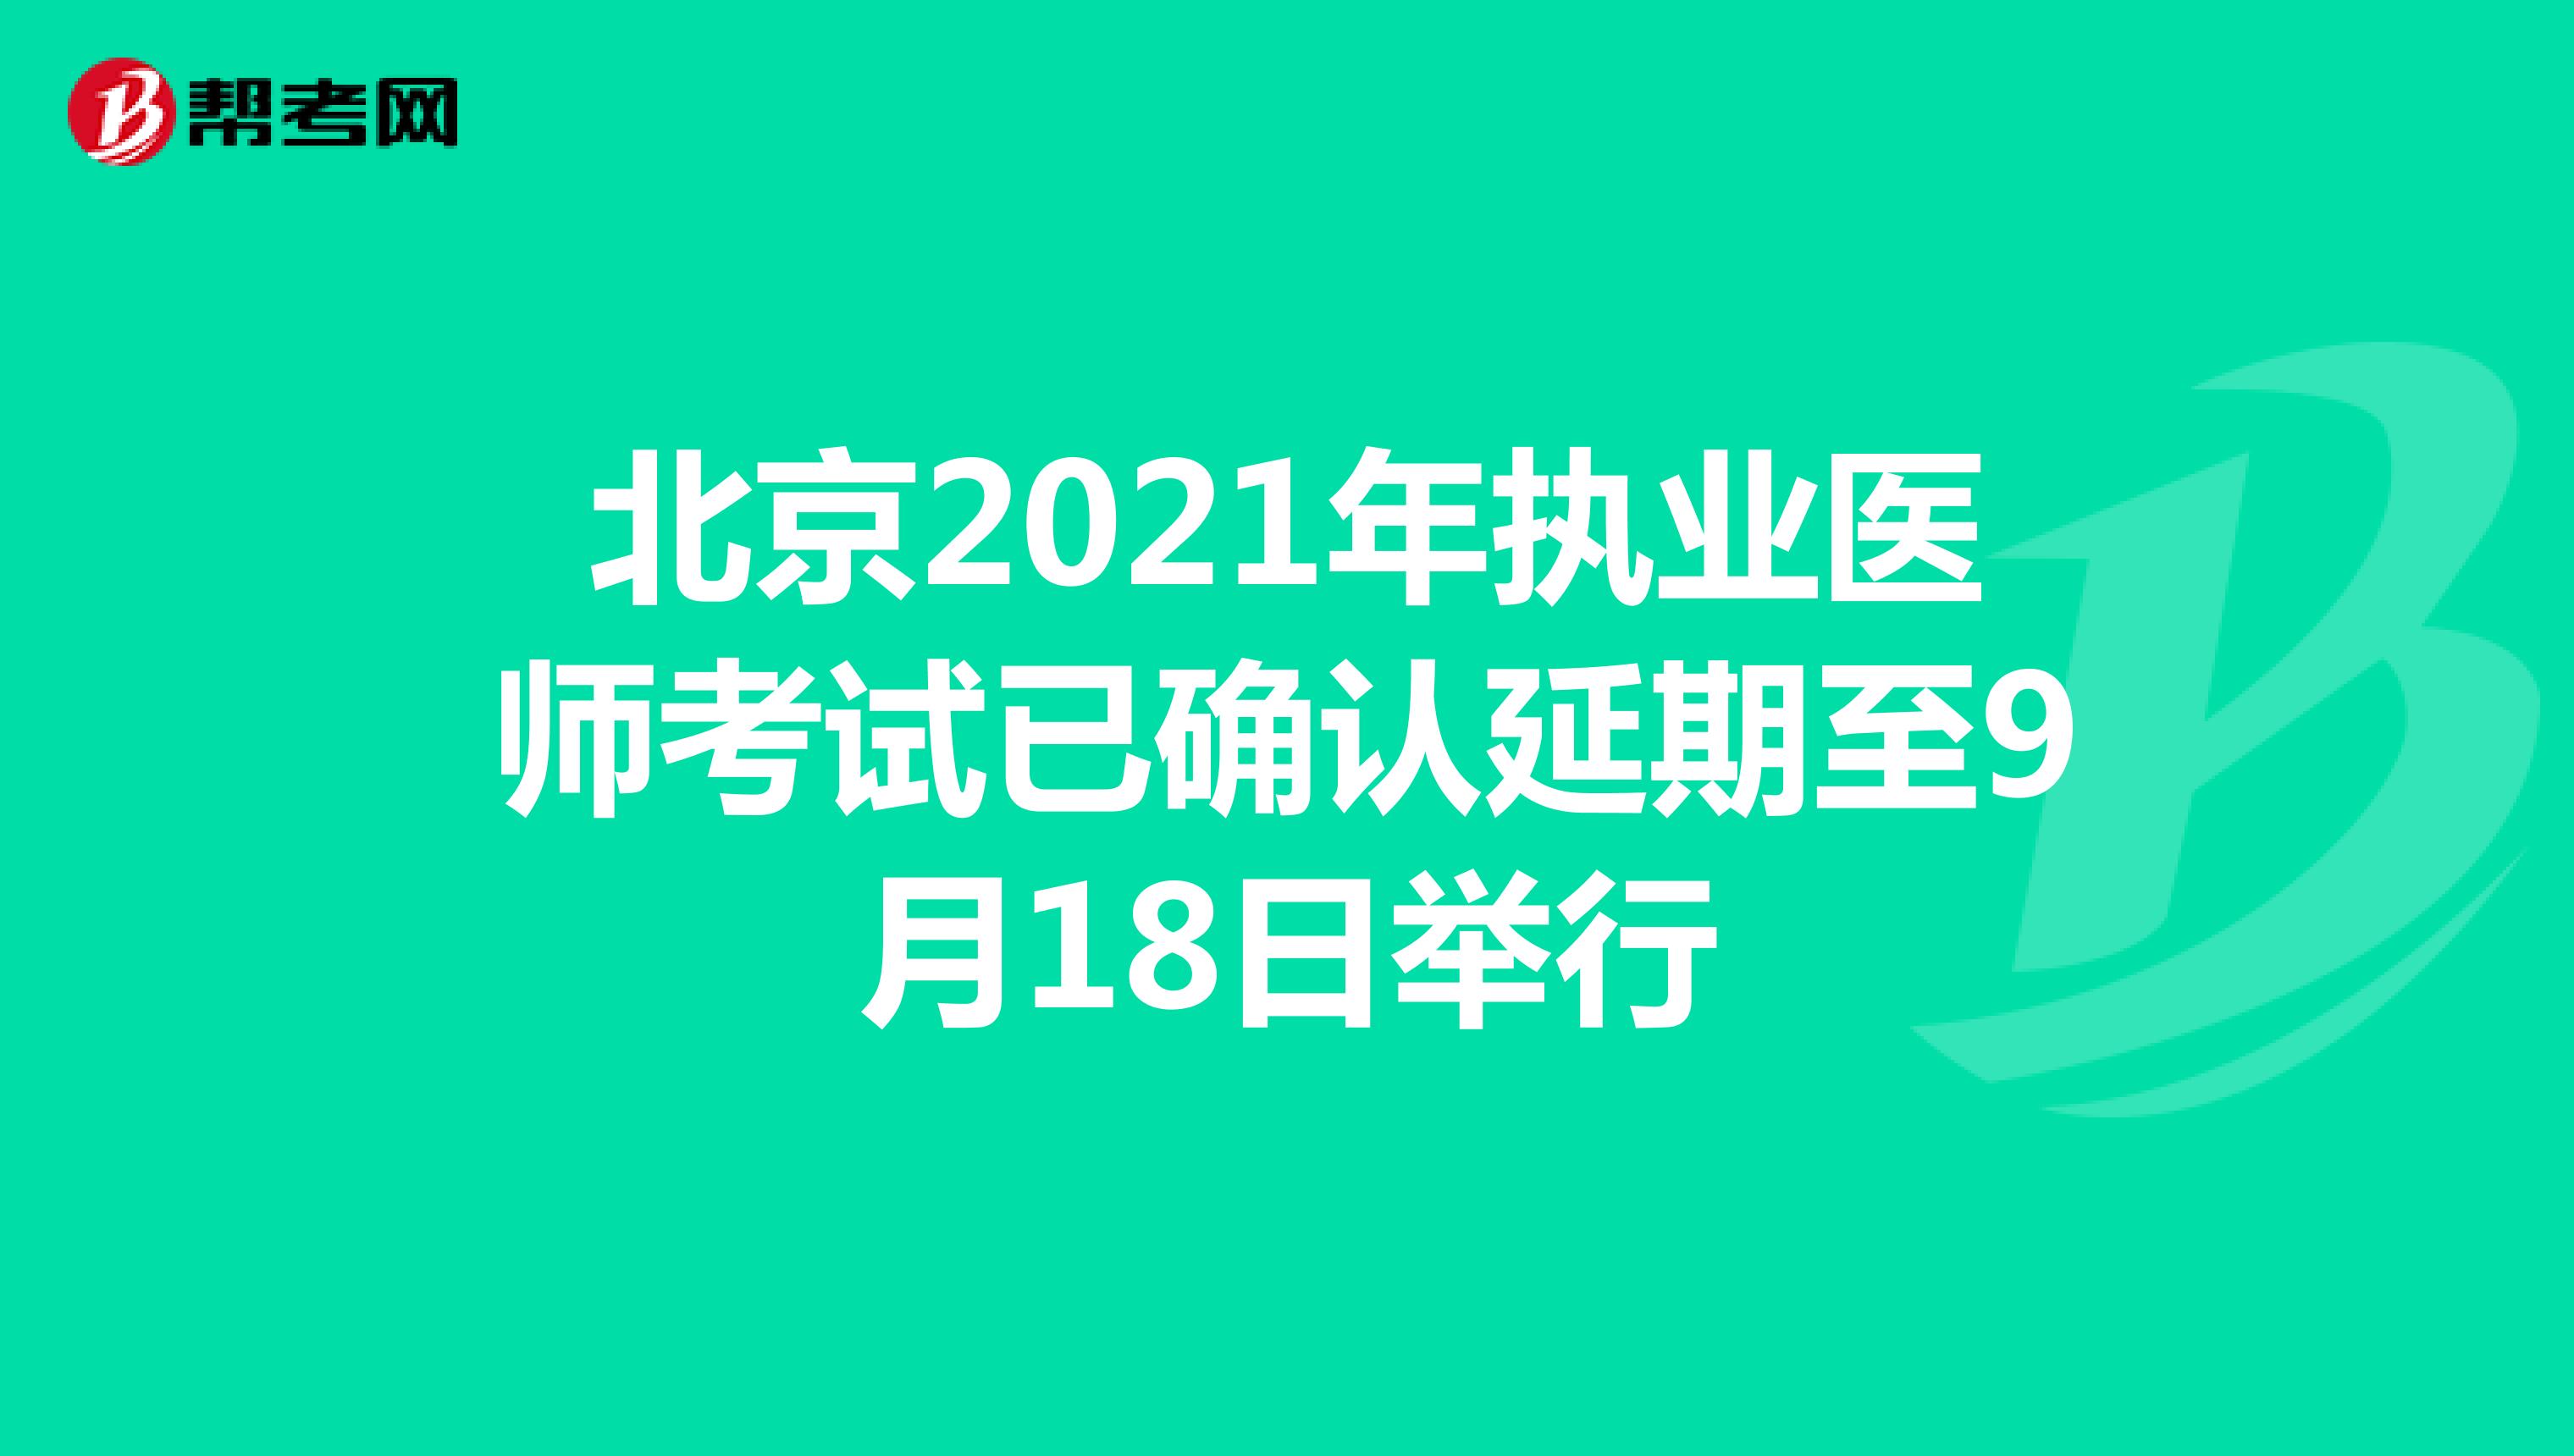 北京2021年执业医师考试已确认延期至9月18日举行